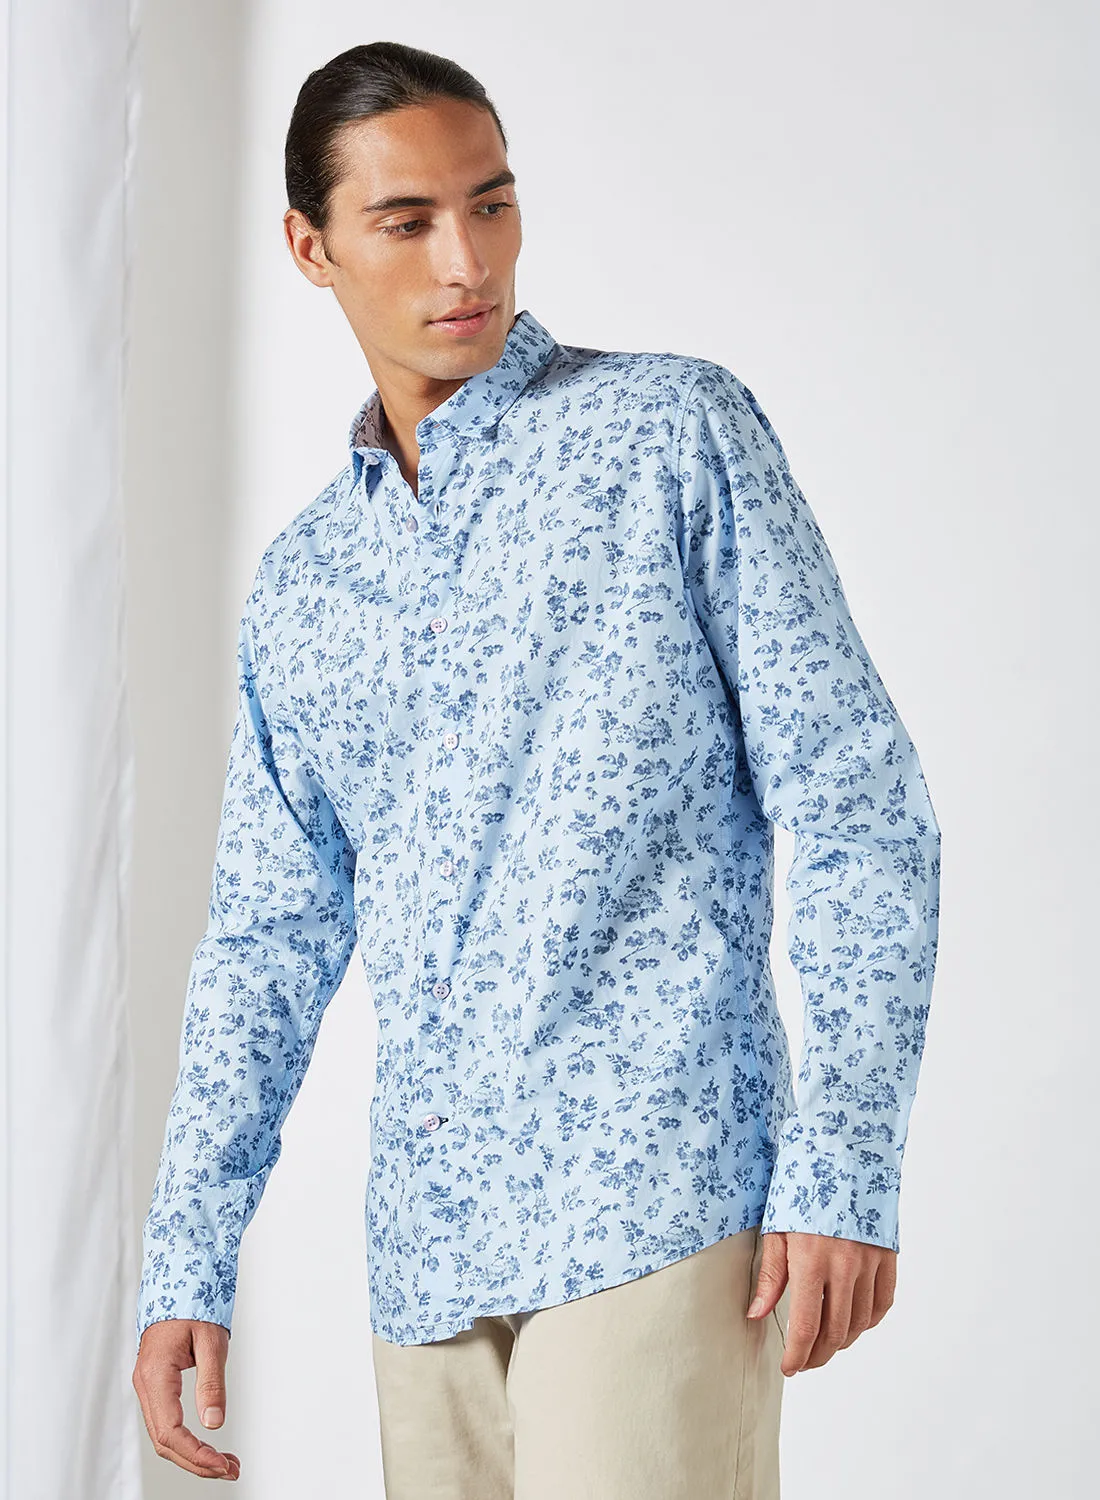 قميص كاجوال للرجال من ماست آند هاربور بطبعة زهور أزرق